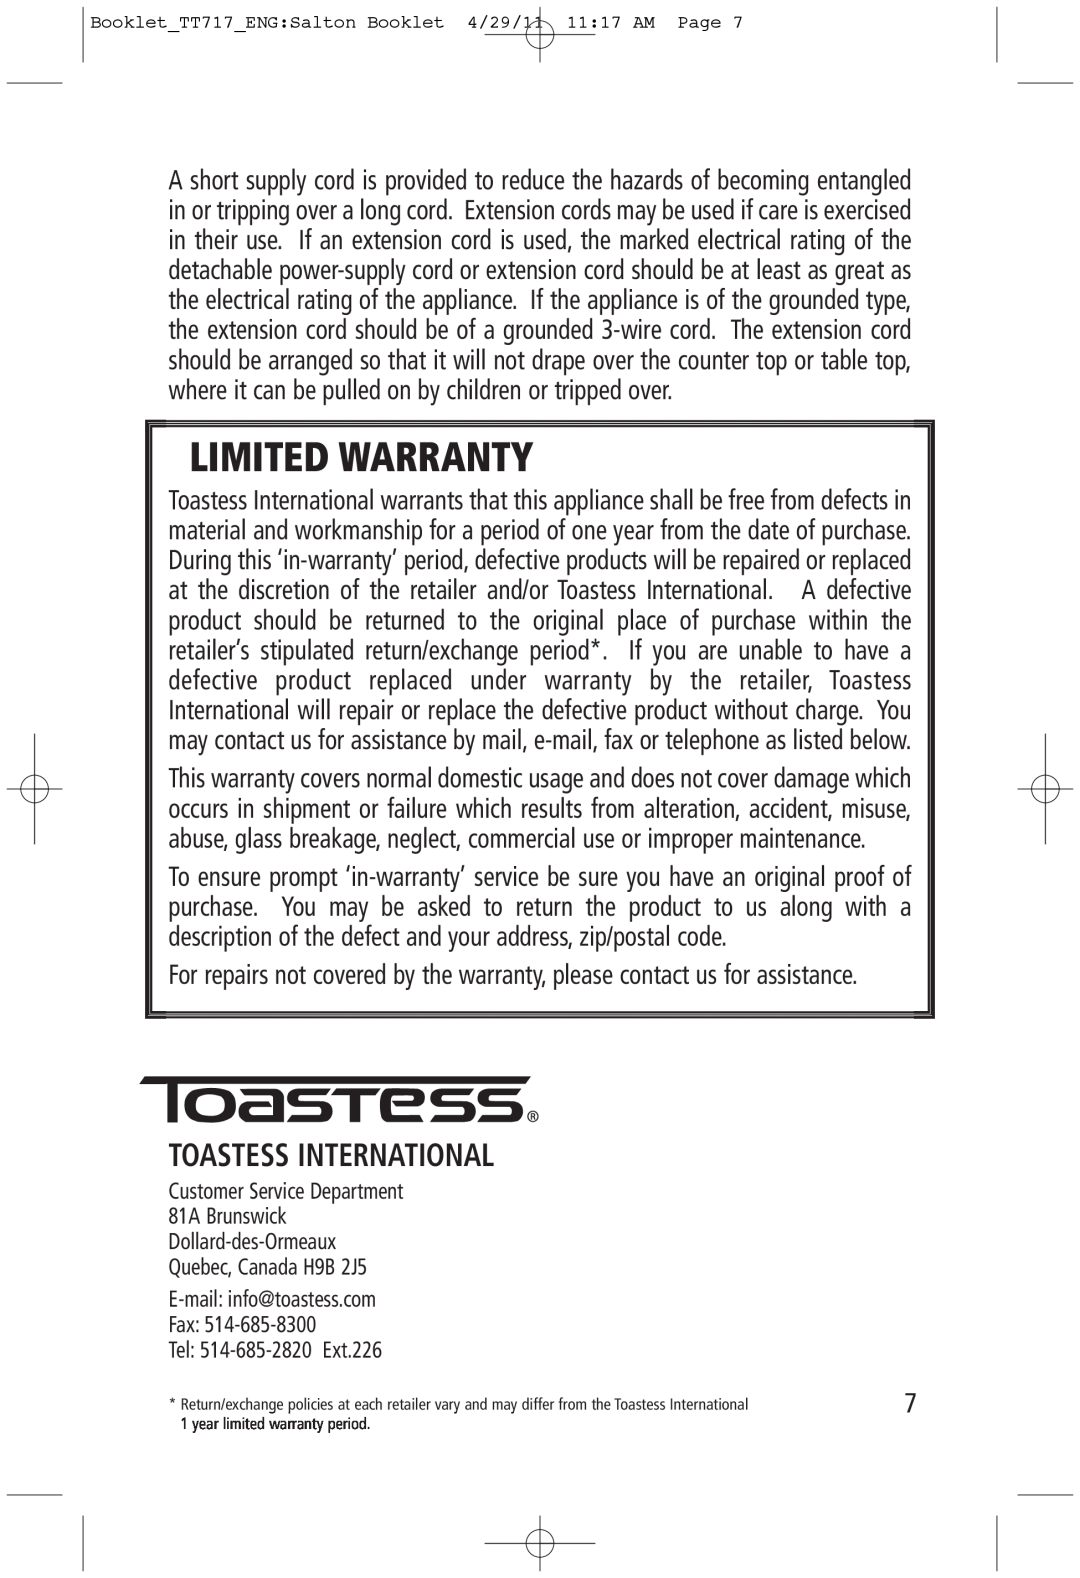 Toastess TT717 manual Toastess International, Limited Warranty 